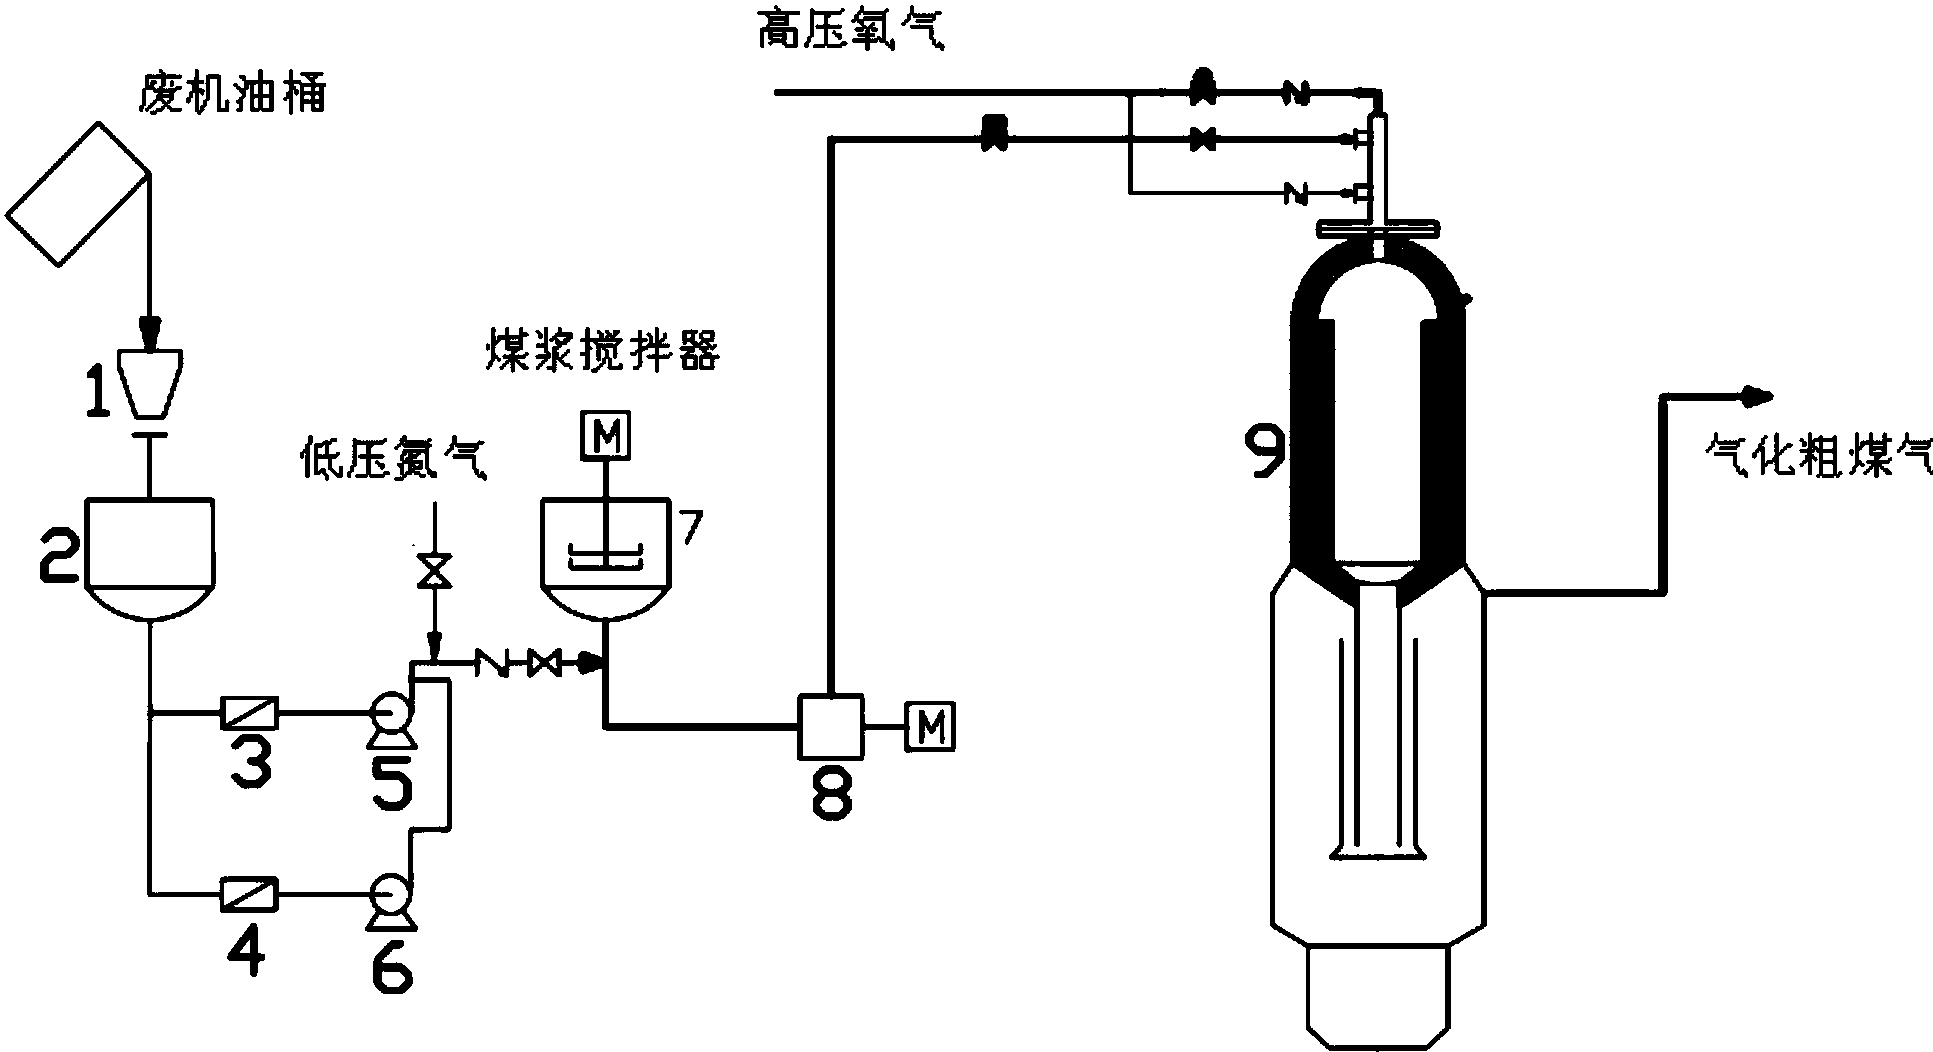 cn107559845a_一种用煤气化炉掺烧处理废机油的装置及方法失效